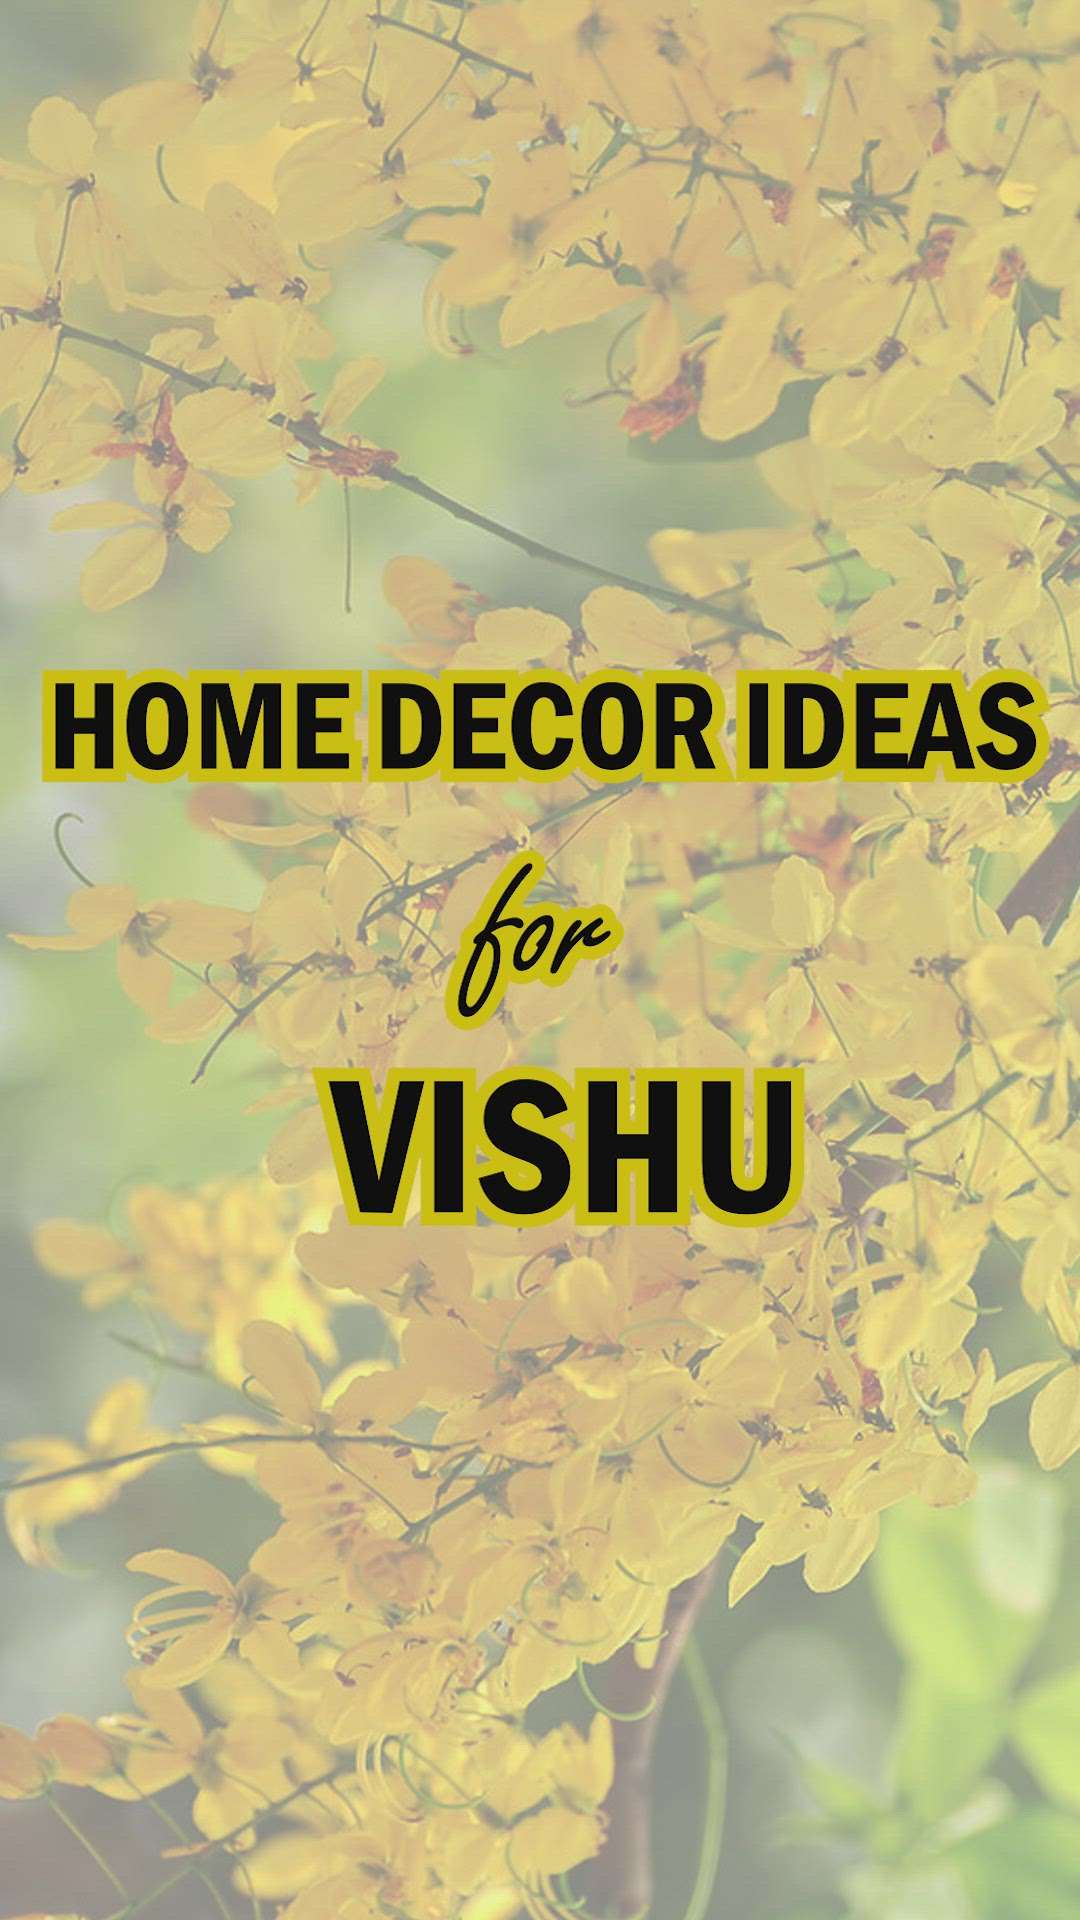 എല്ലാവർക്കും വിഷു ആശംസകൾ

Vishu home decor ideas.....

#kolo #festivevibes #festivedecor #HomeDecor #traditionalhome #interiorideas #koloapp #vishuspecial